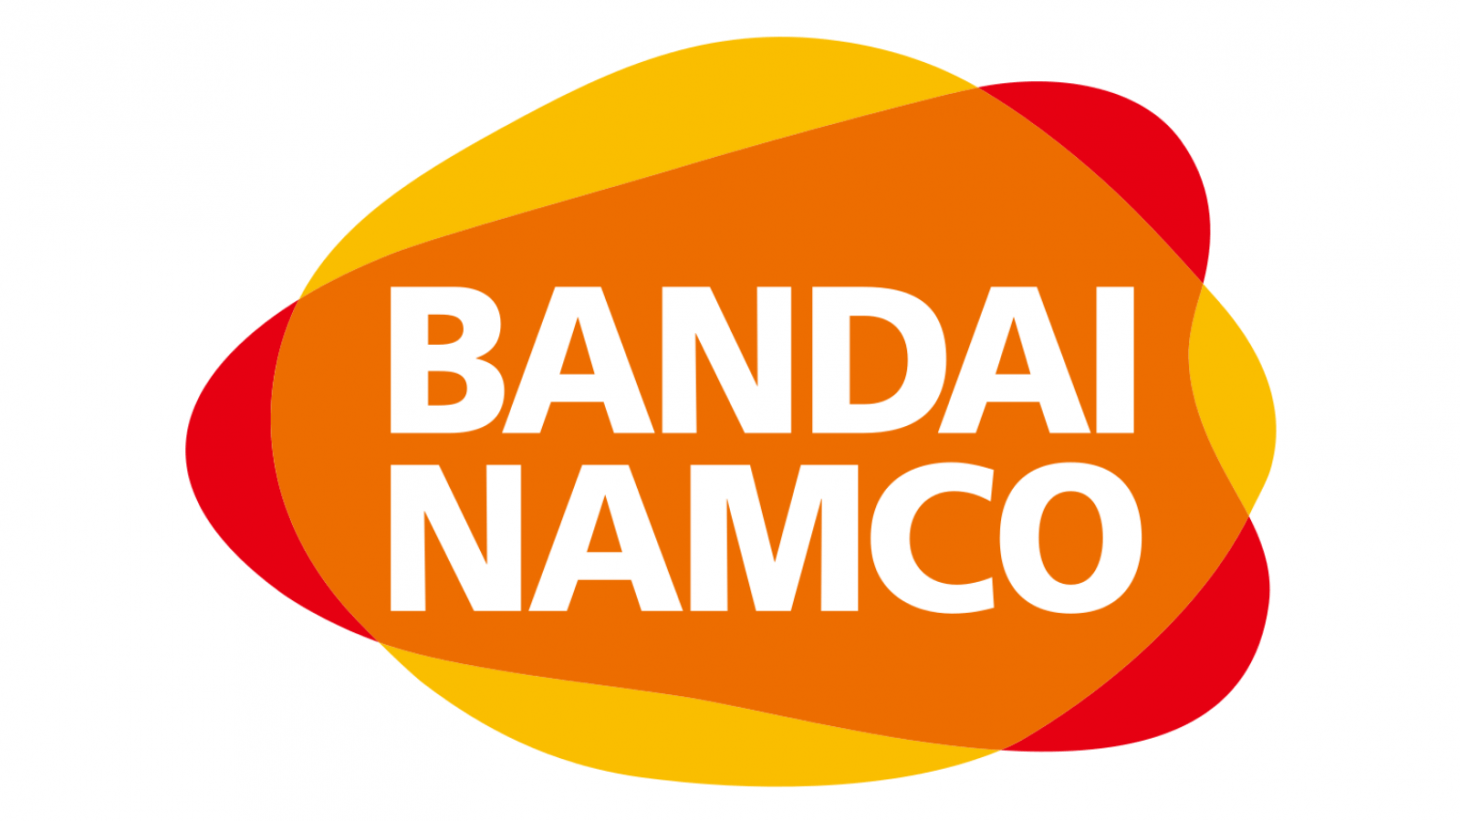 استودیو Bandai Namco گران ترین بازی این شرکت را خواهد ساخت